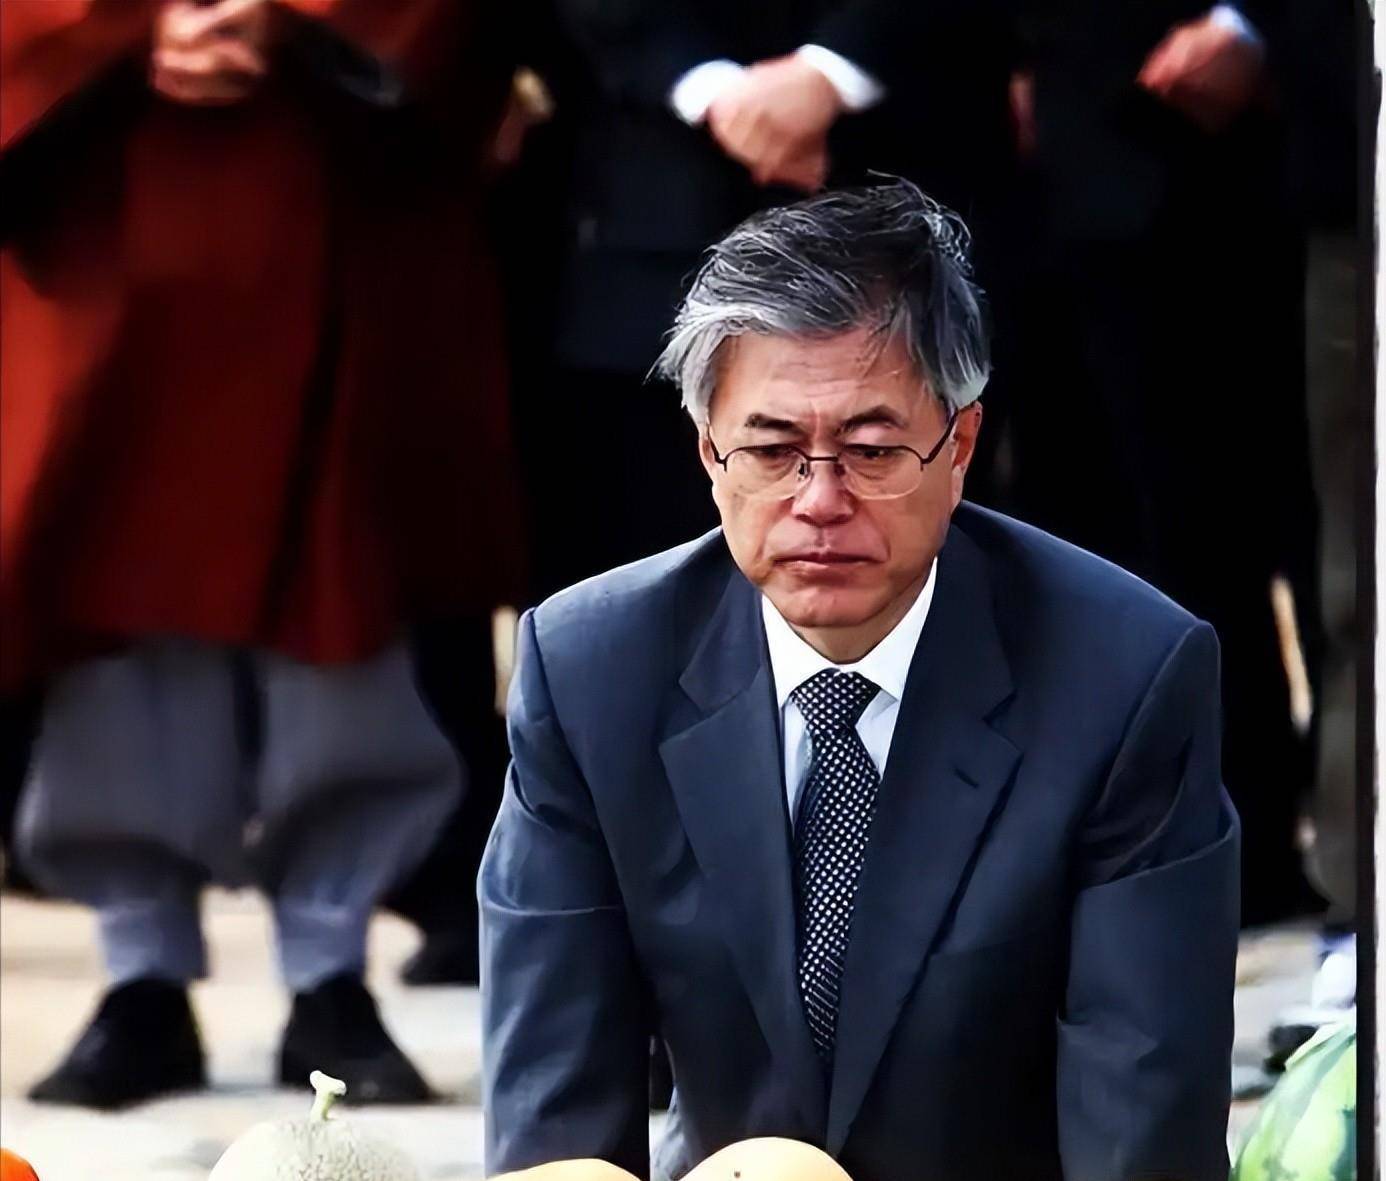 卢武铉去世后,文在寅要开启一段孤独的路,主题是为民主而战